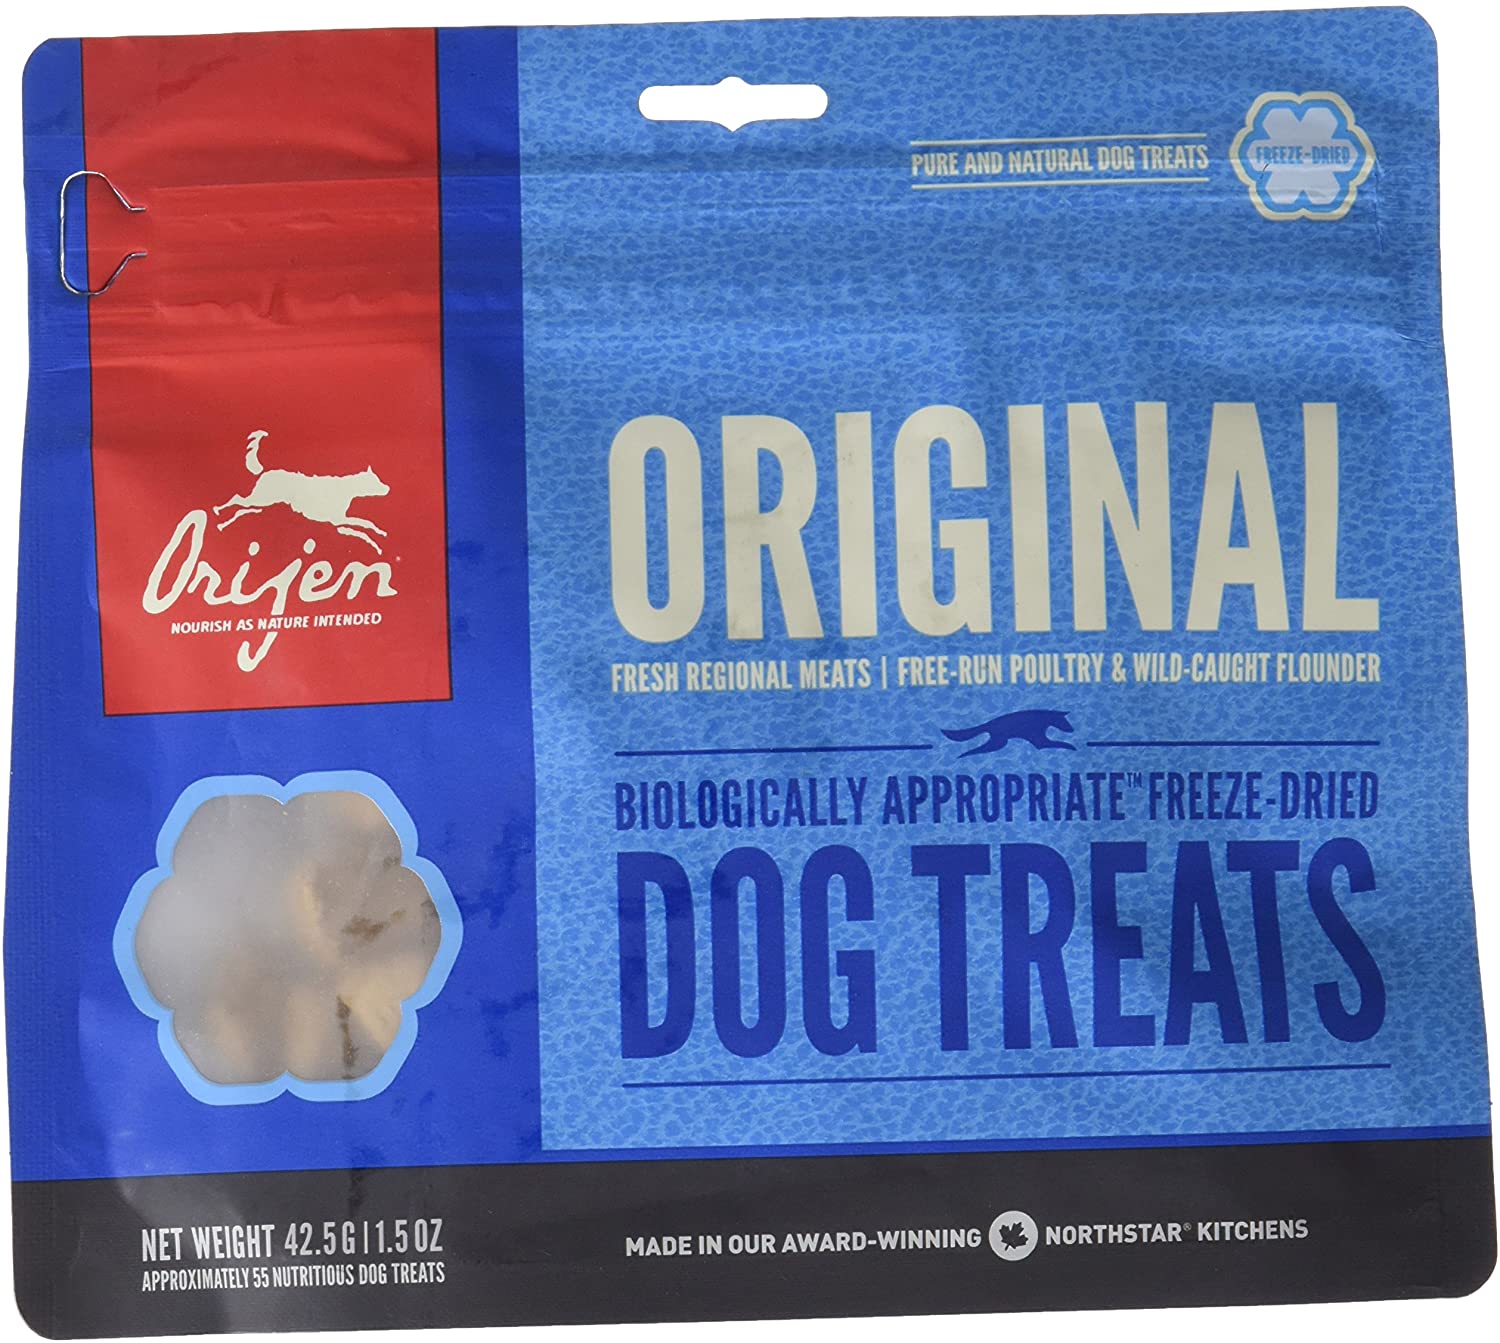  Orijen Canine Adult Treat Original 42,5Gr 42.5 g 